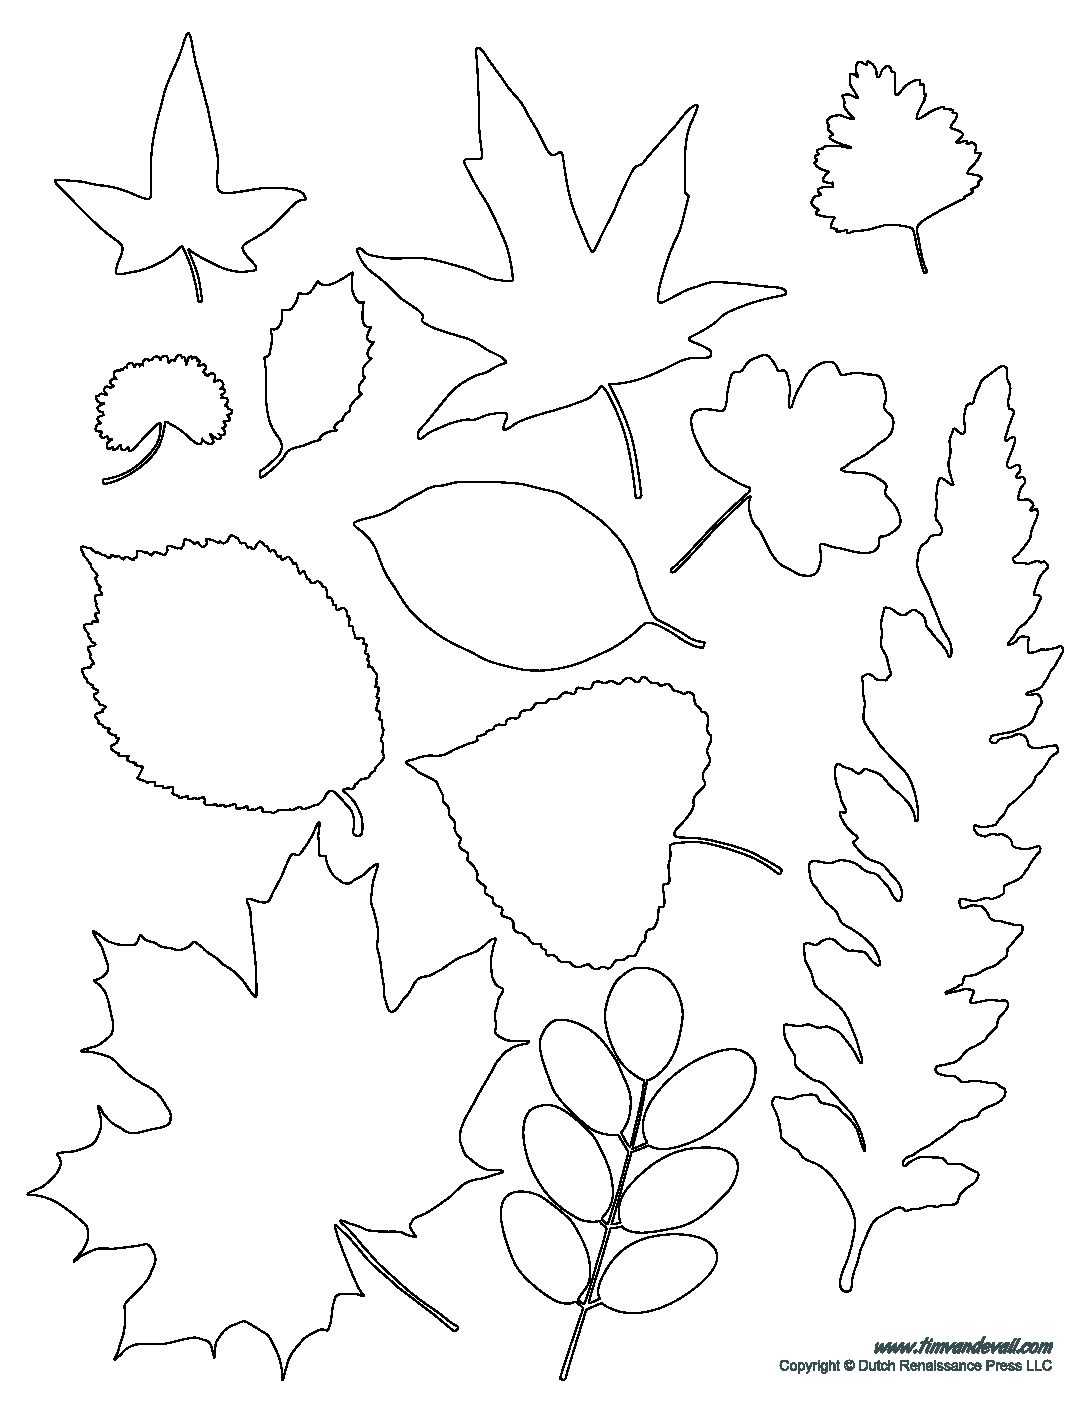 Шаблон листочка для вырезания из бумаги: дубовый, ромашка, кленовый. трафареты для аппликаций с детьми